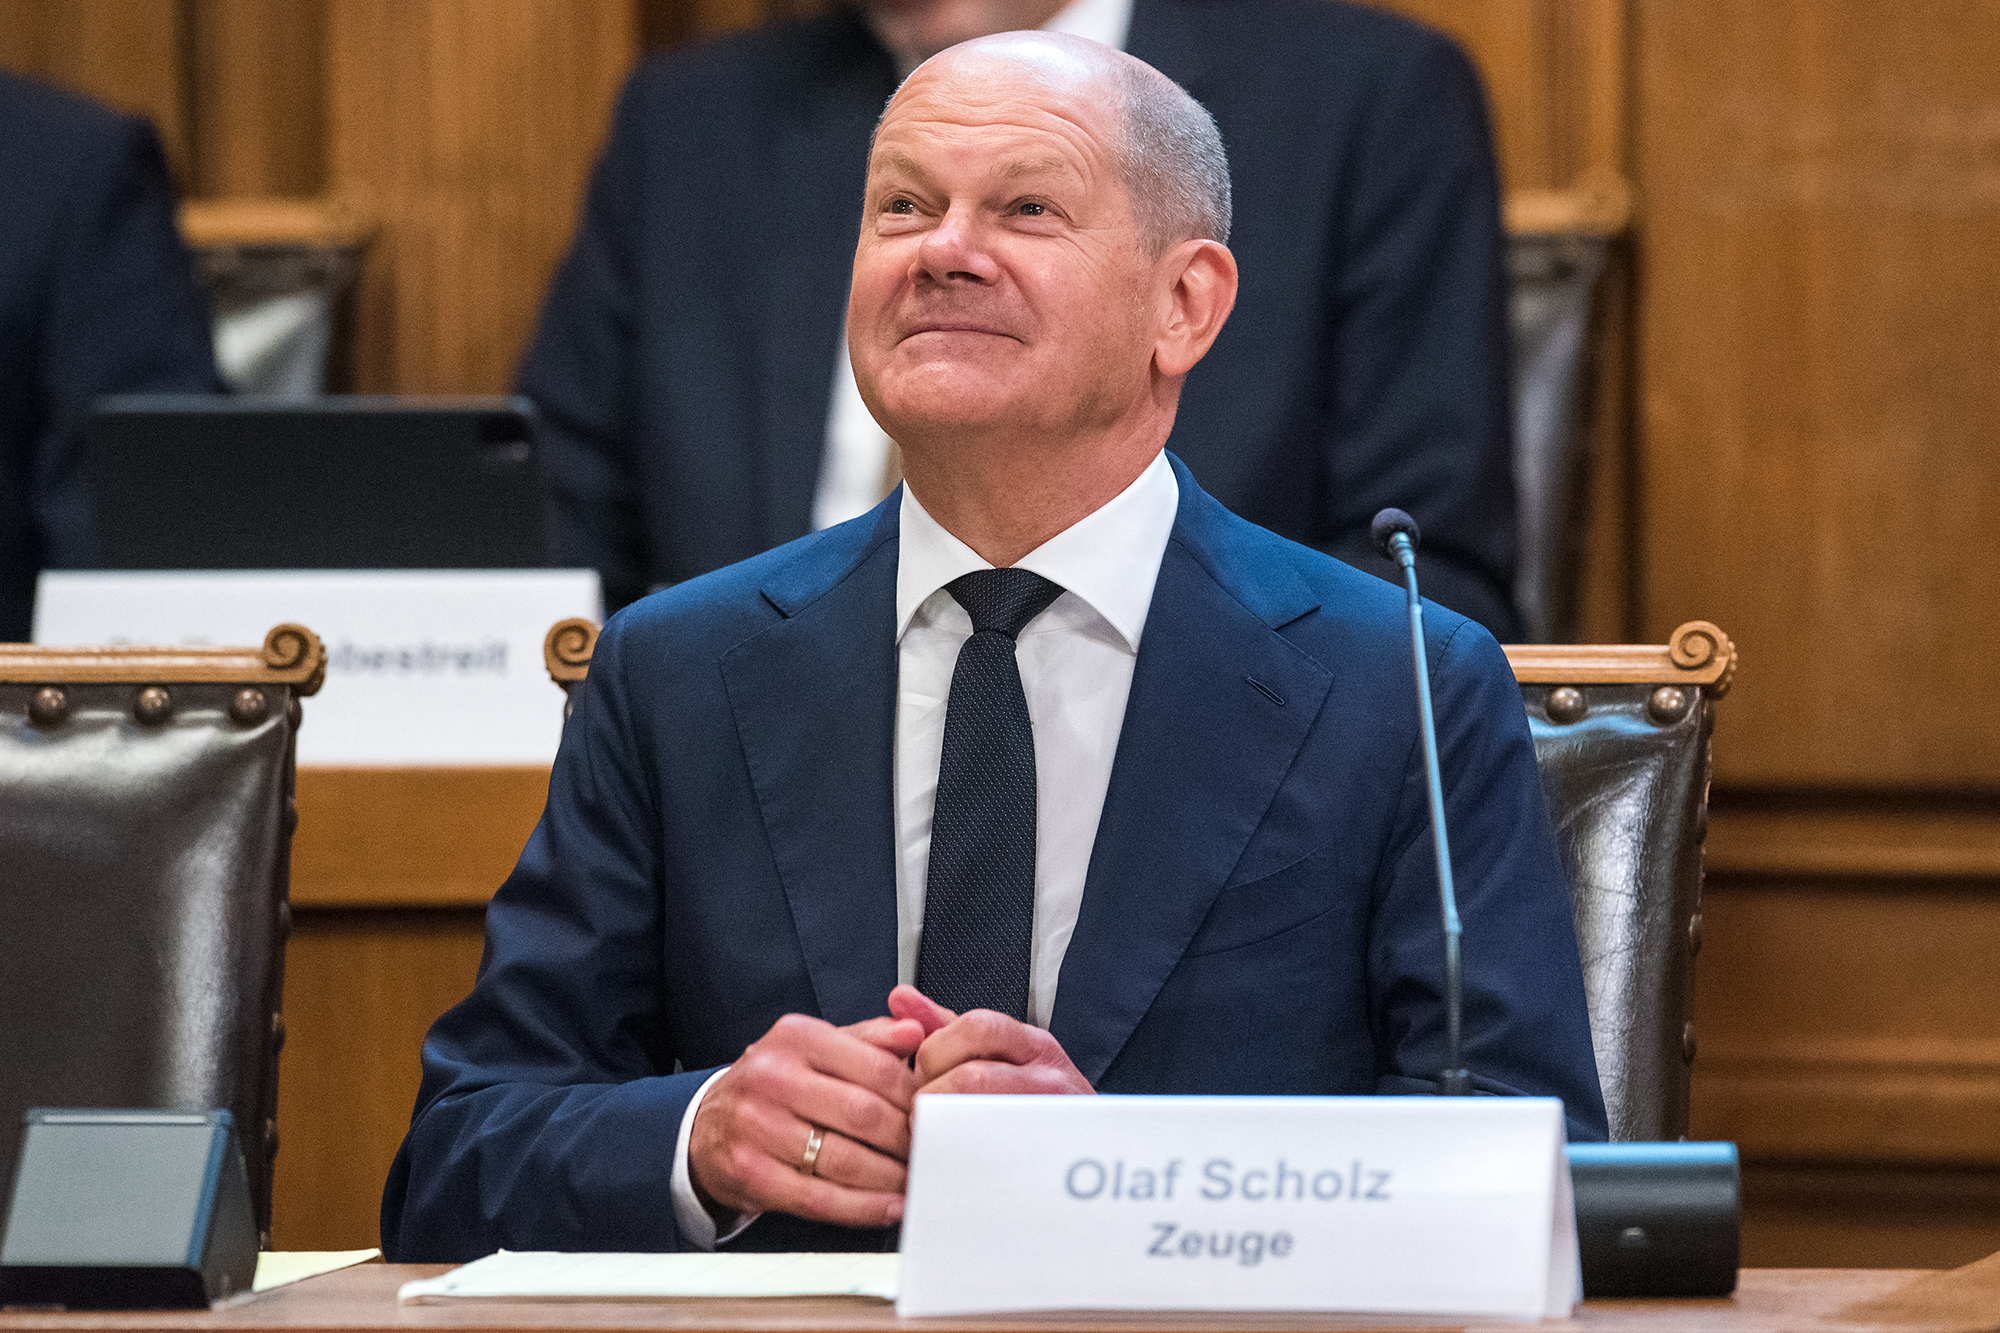 Der deutsche Bundeskanzler Olaf Scholz musste im Untersuchungsausschuss in der Hamburgischen Bürgerschaft aussagen (Bild: Daniel Bockwoldt/AFP)